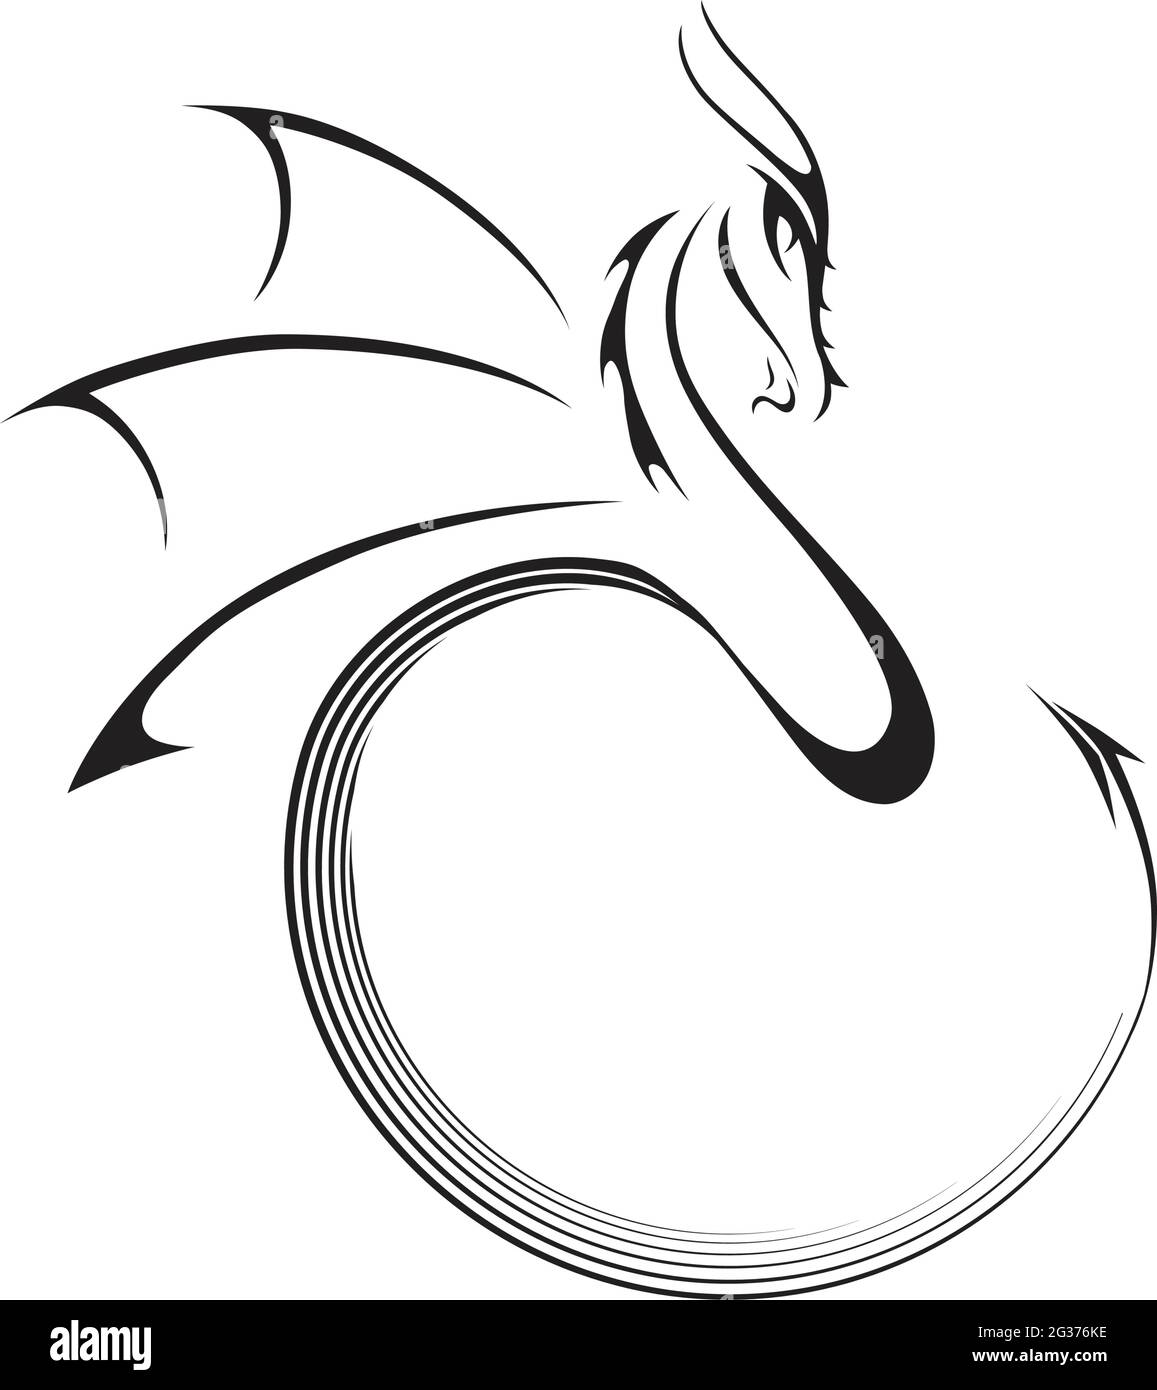 illustrazione del drago stilizzata Illustrazione Vettoriale